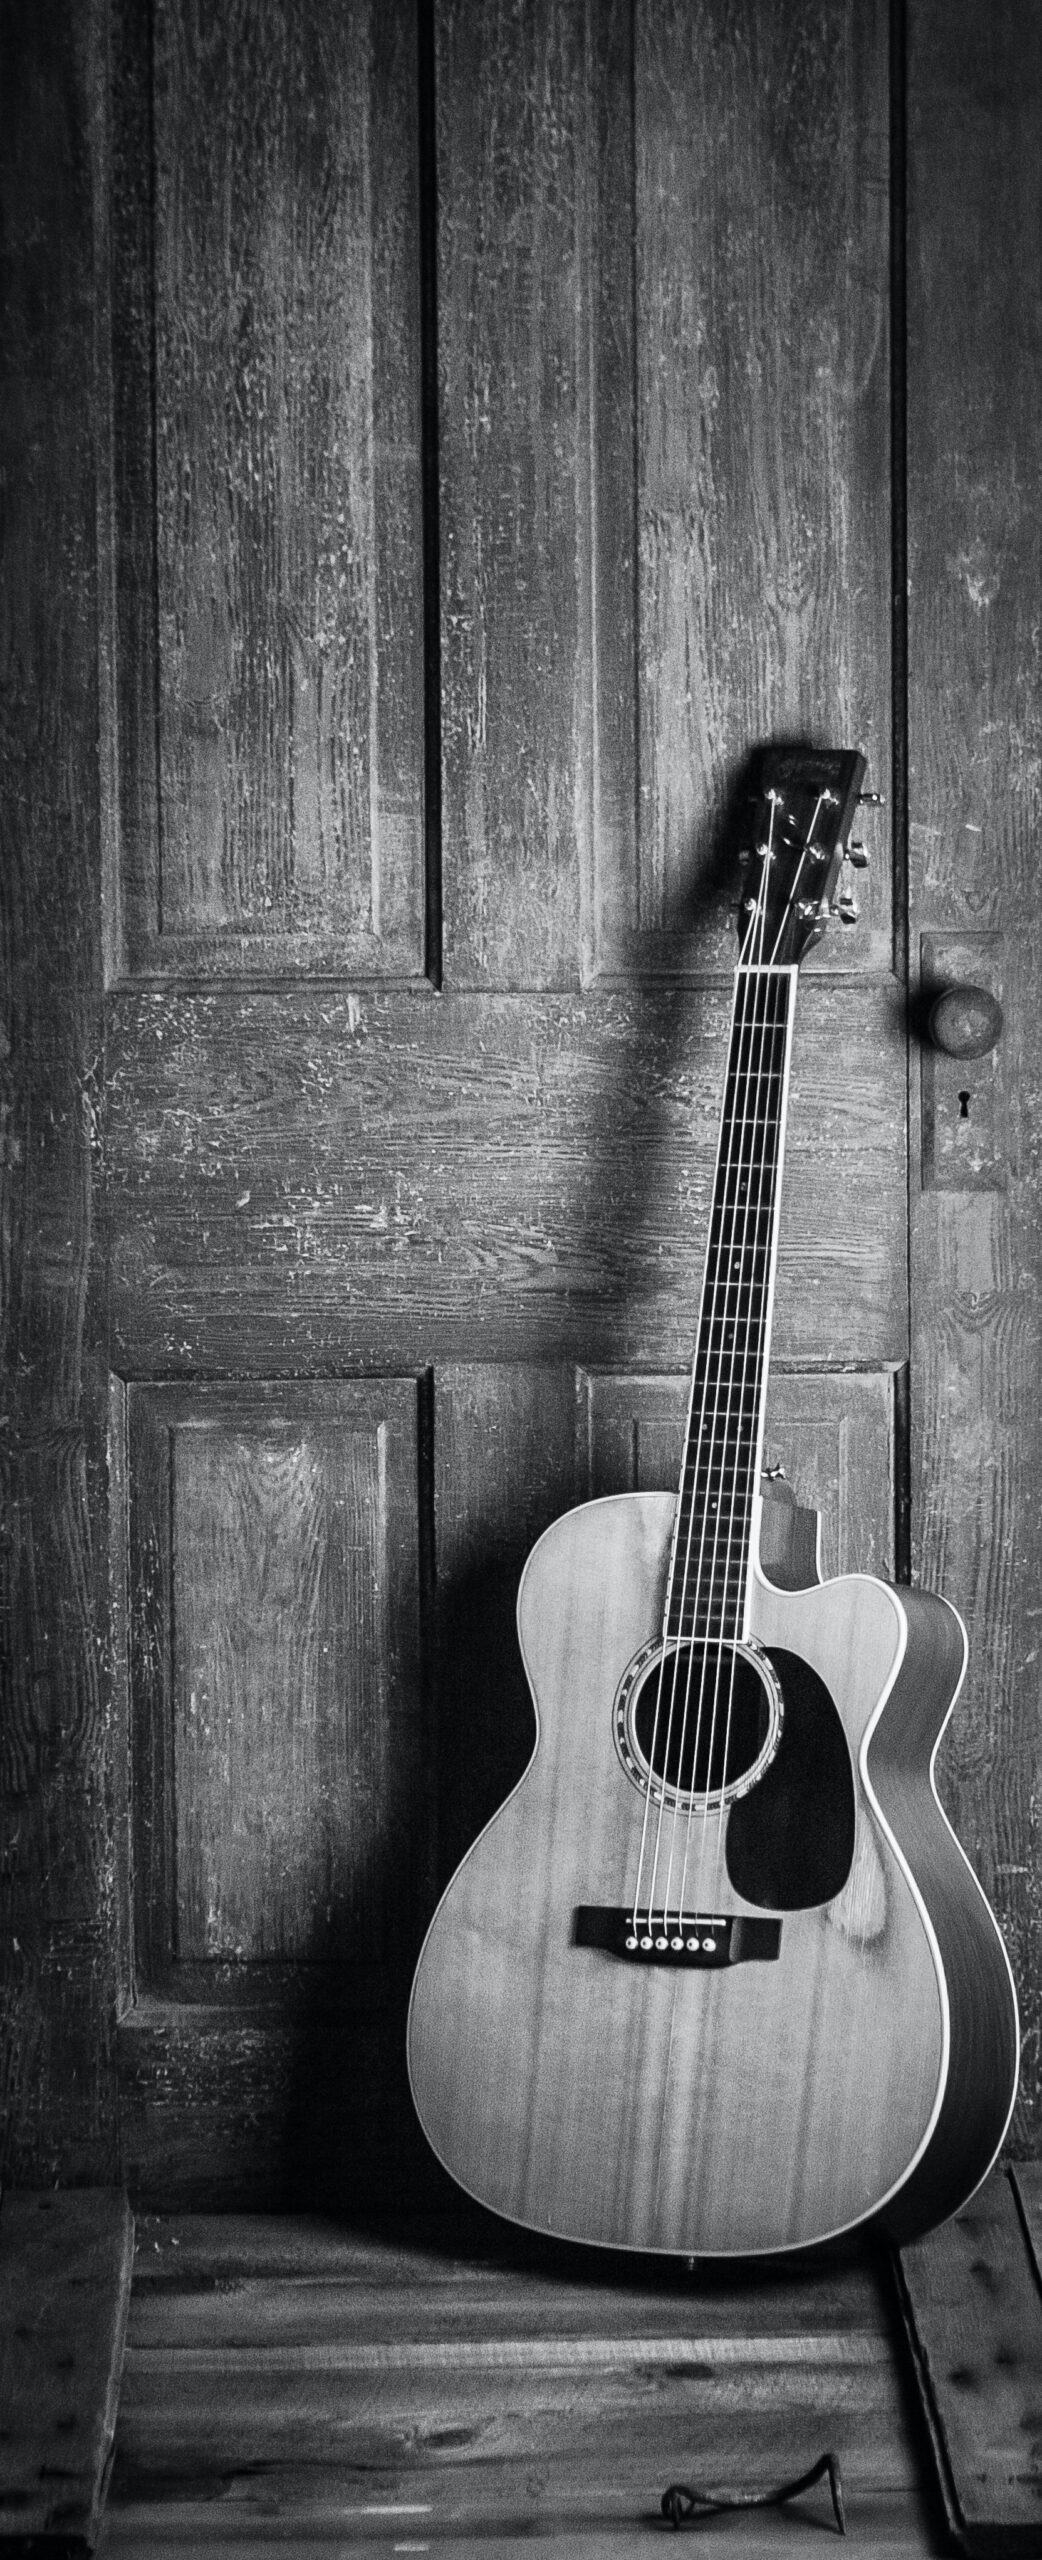 Guitarras Gibson Acústicas no es solo una marca de guitarras; es una tradición viva de excelencia y pasión por la música.